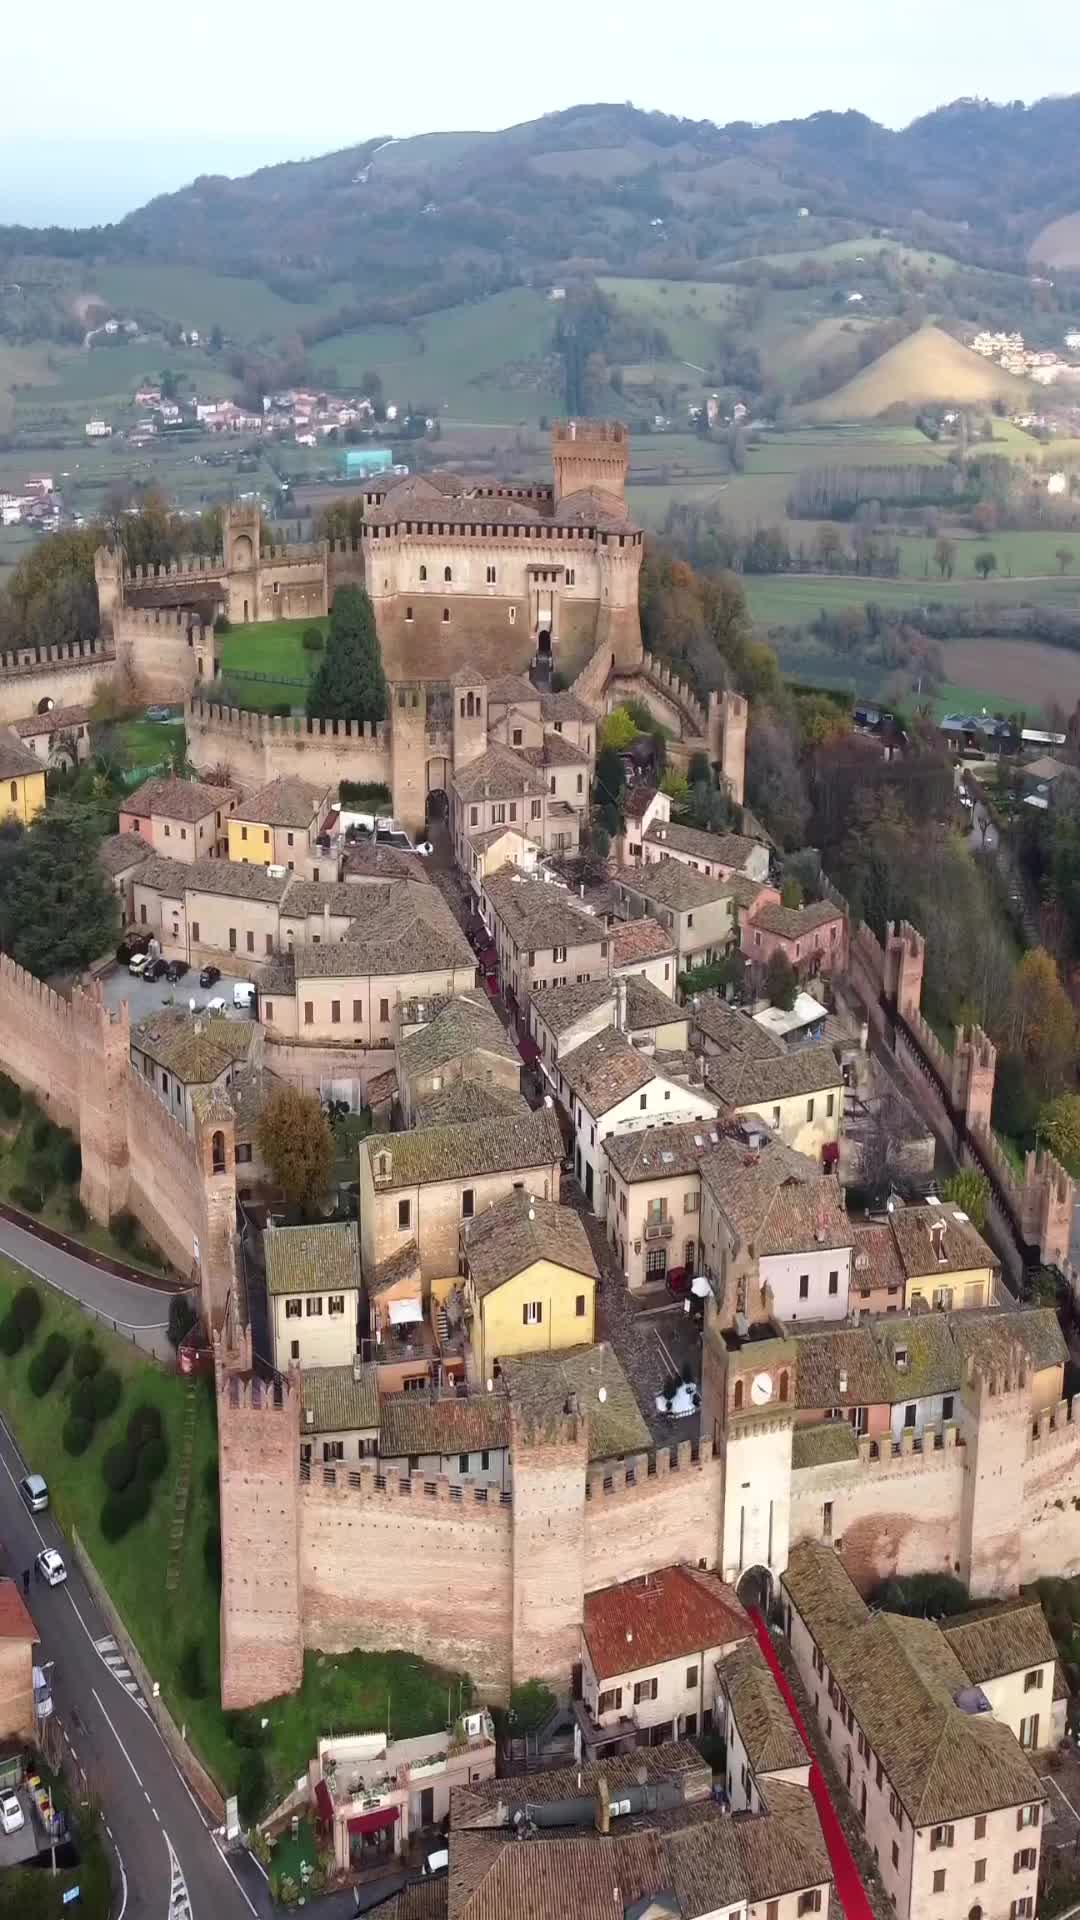 Gradara 🇮🇹 Marche 

Gradara capital of the Middle Ages castello 🏰 

#italia #volgoitalia #don_in_italy #ig_italy #ig_italia #ig_europa #europestyle_ #ilikeitaly #super_italy #iltrippovago #italyescapes #igersitalia #italia_dev #marchetourism #italiainunoscatto #marche #borghitalia #borghiitaliani #perfect_italia #urbino #archeology #architecture #castelli #castle #pesaro #medieval #gradara # #borghiditalia